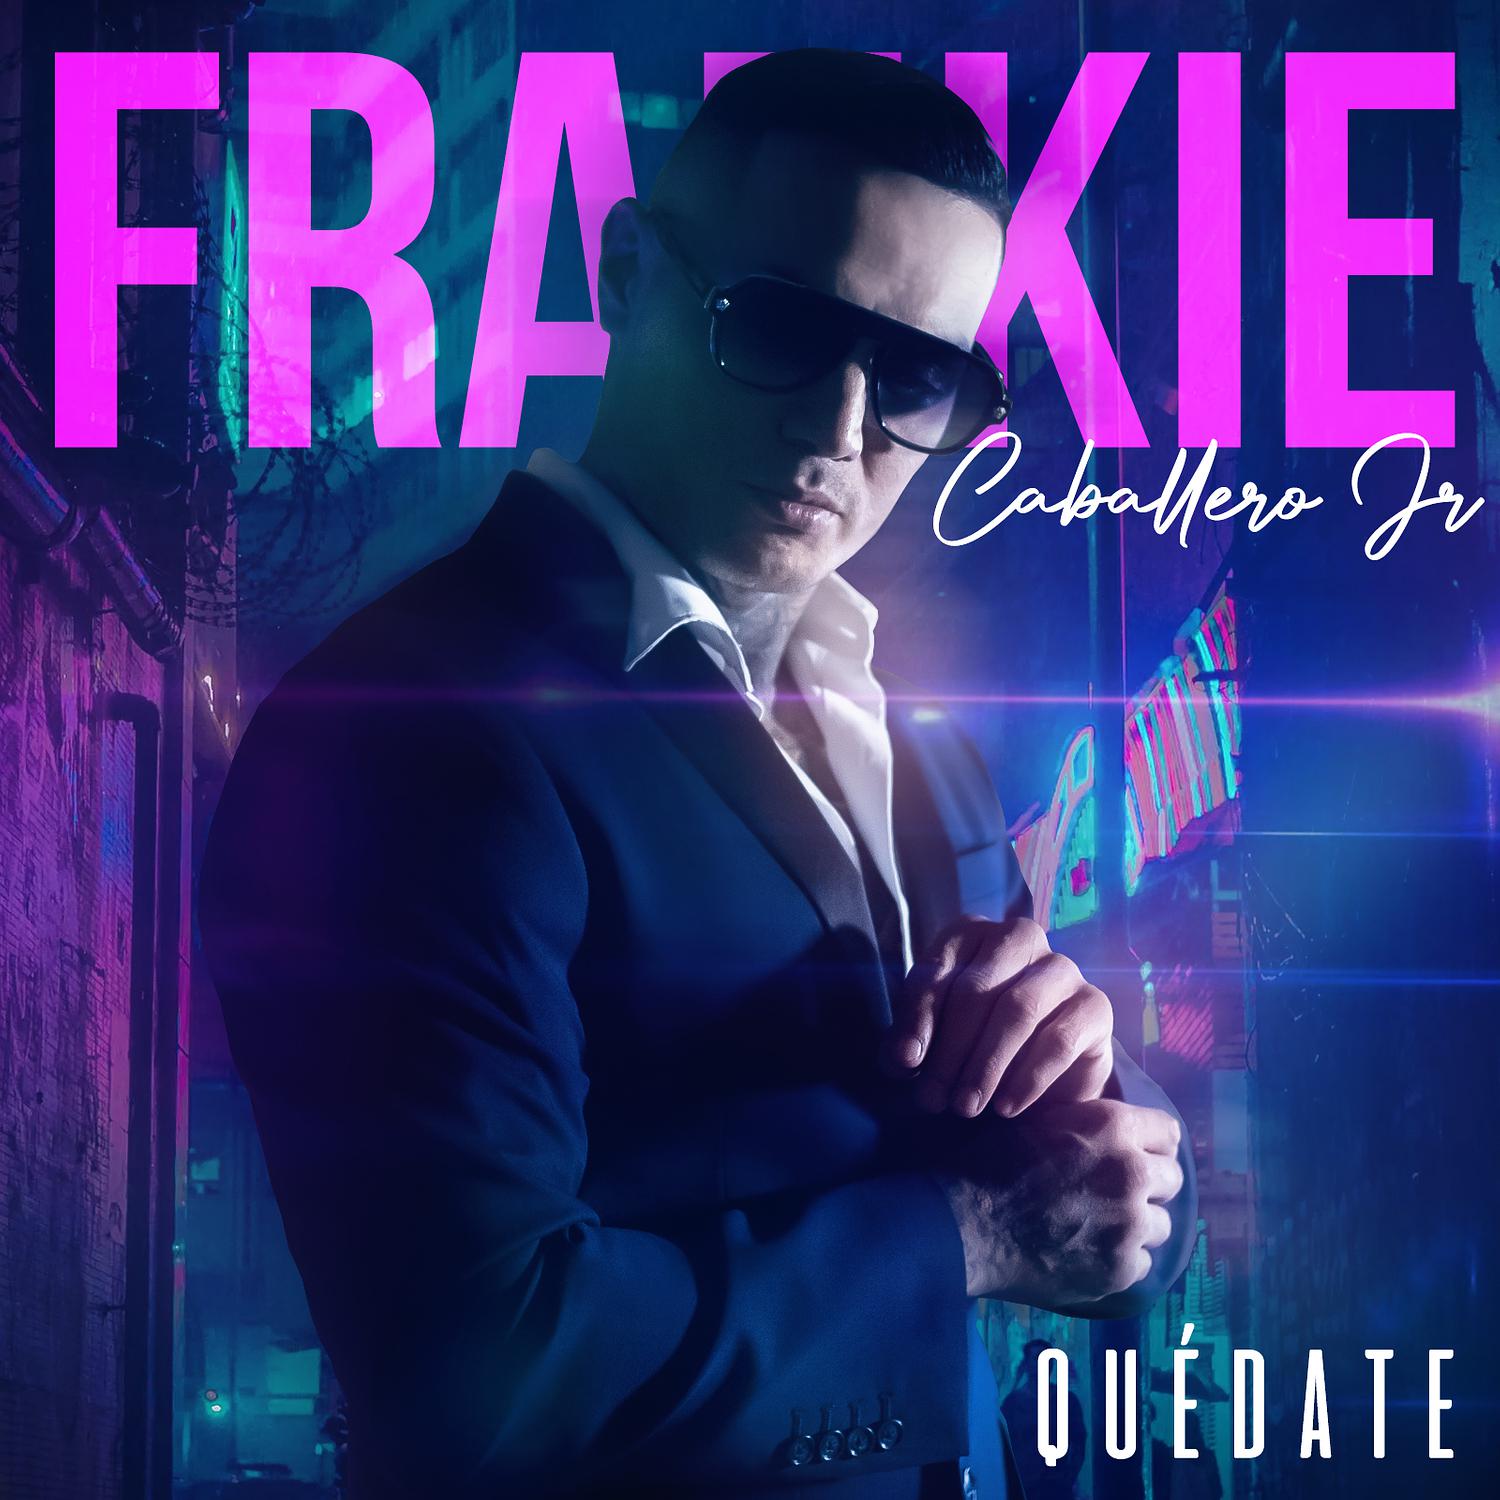 Frankie Caballero Jr. - Quedate